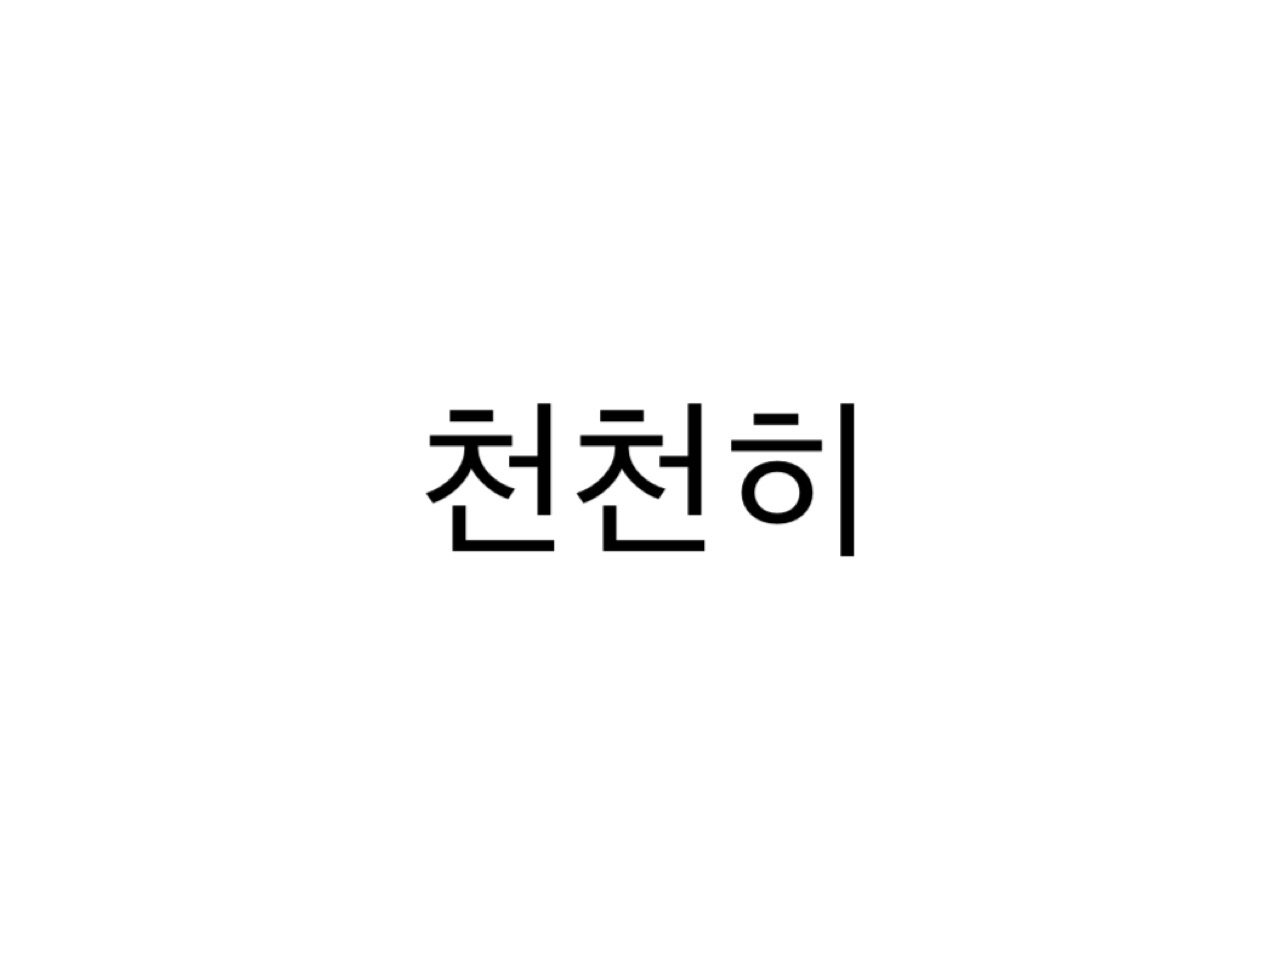 こんな韓国語使ってみたい キュレーター厳選した 発音が可愛い単語 7選 韓国情報サイトmanimani